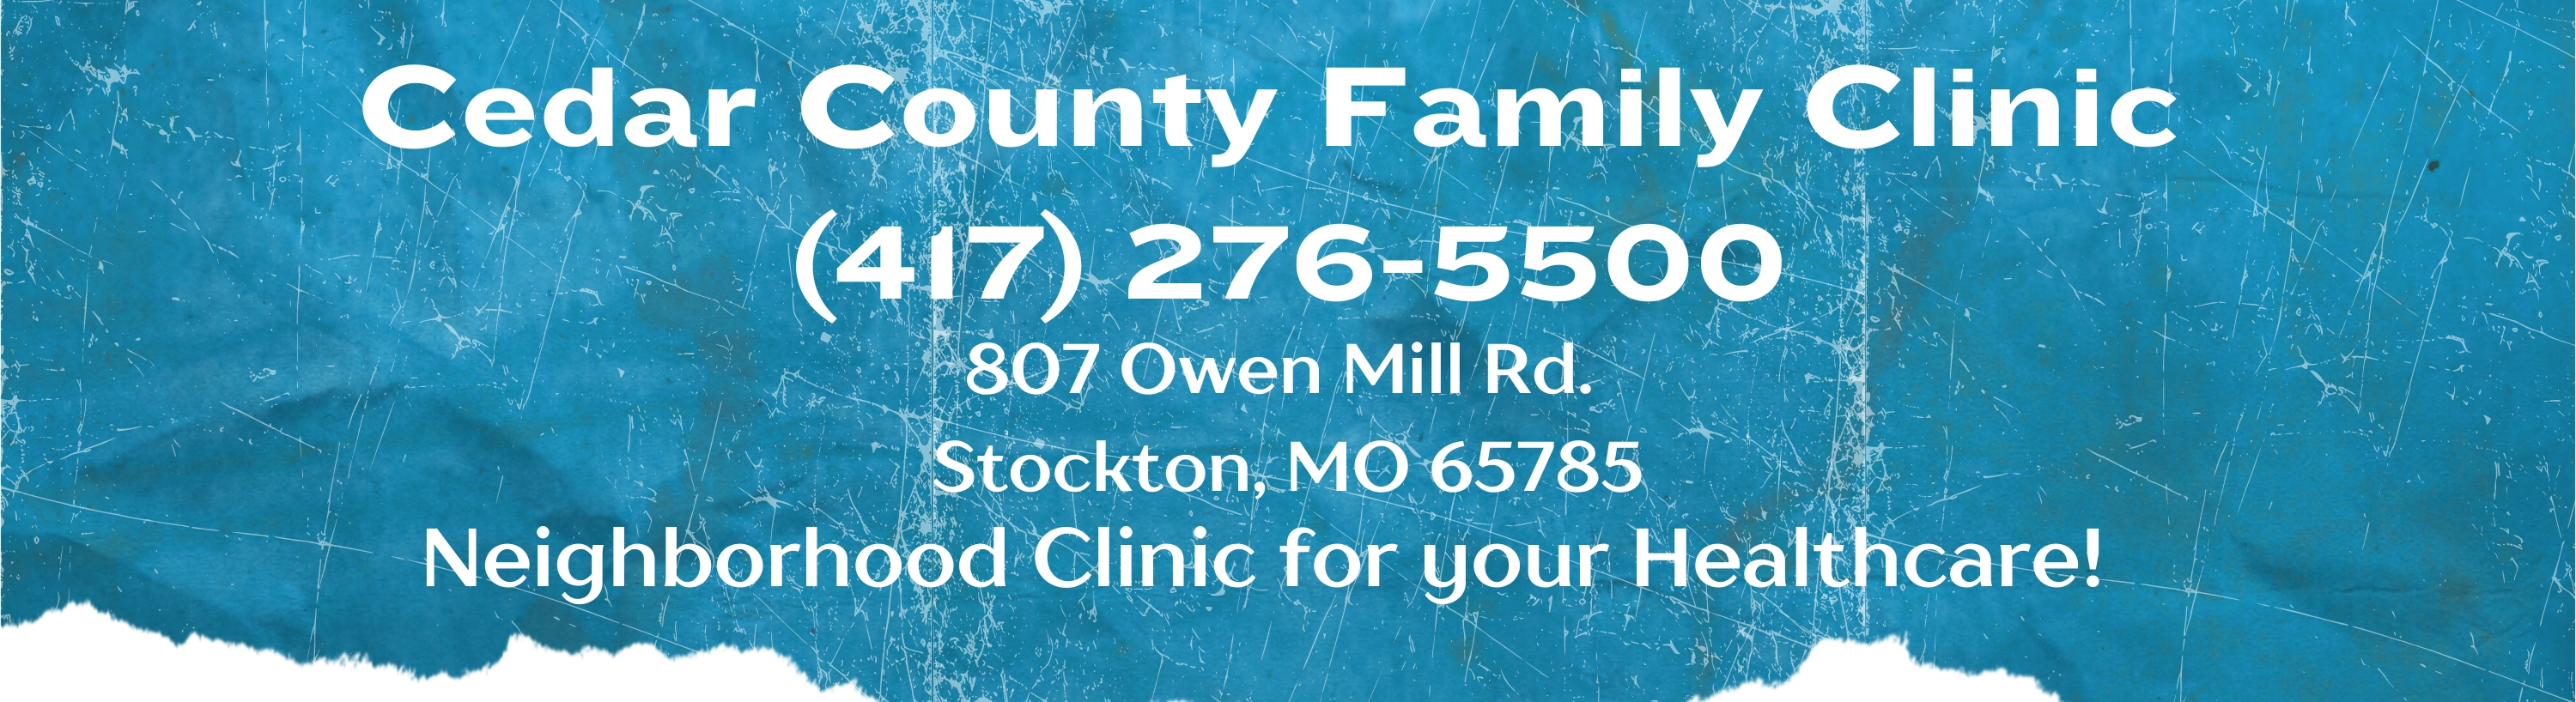 Cedar County Family Clinic
897 Owen Mill Rd.
Stockton,MO 65785
(417)276-5500